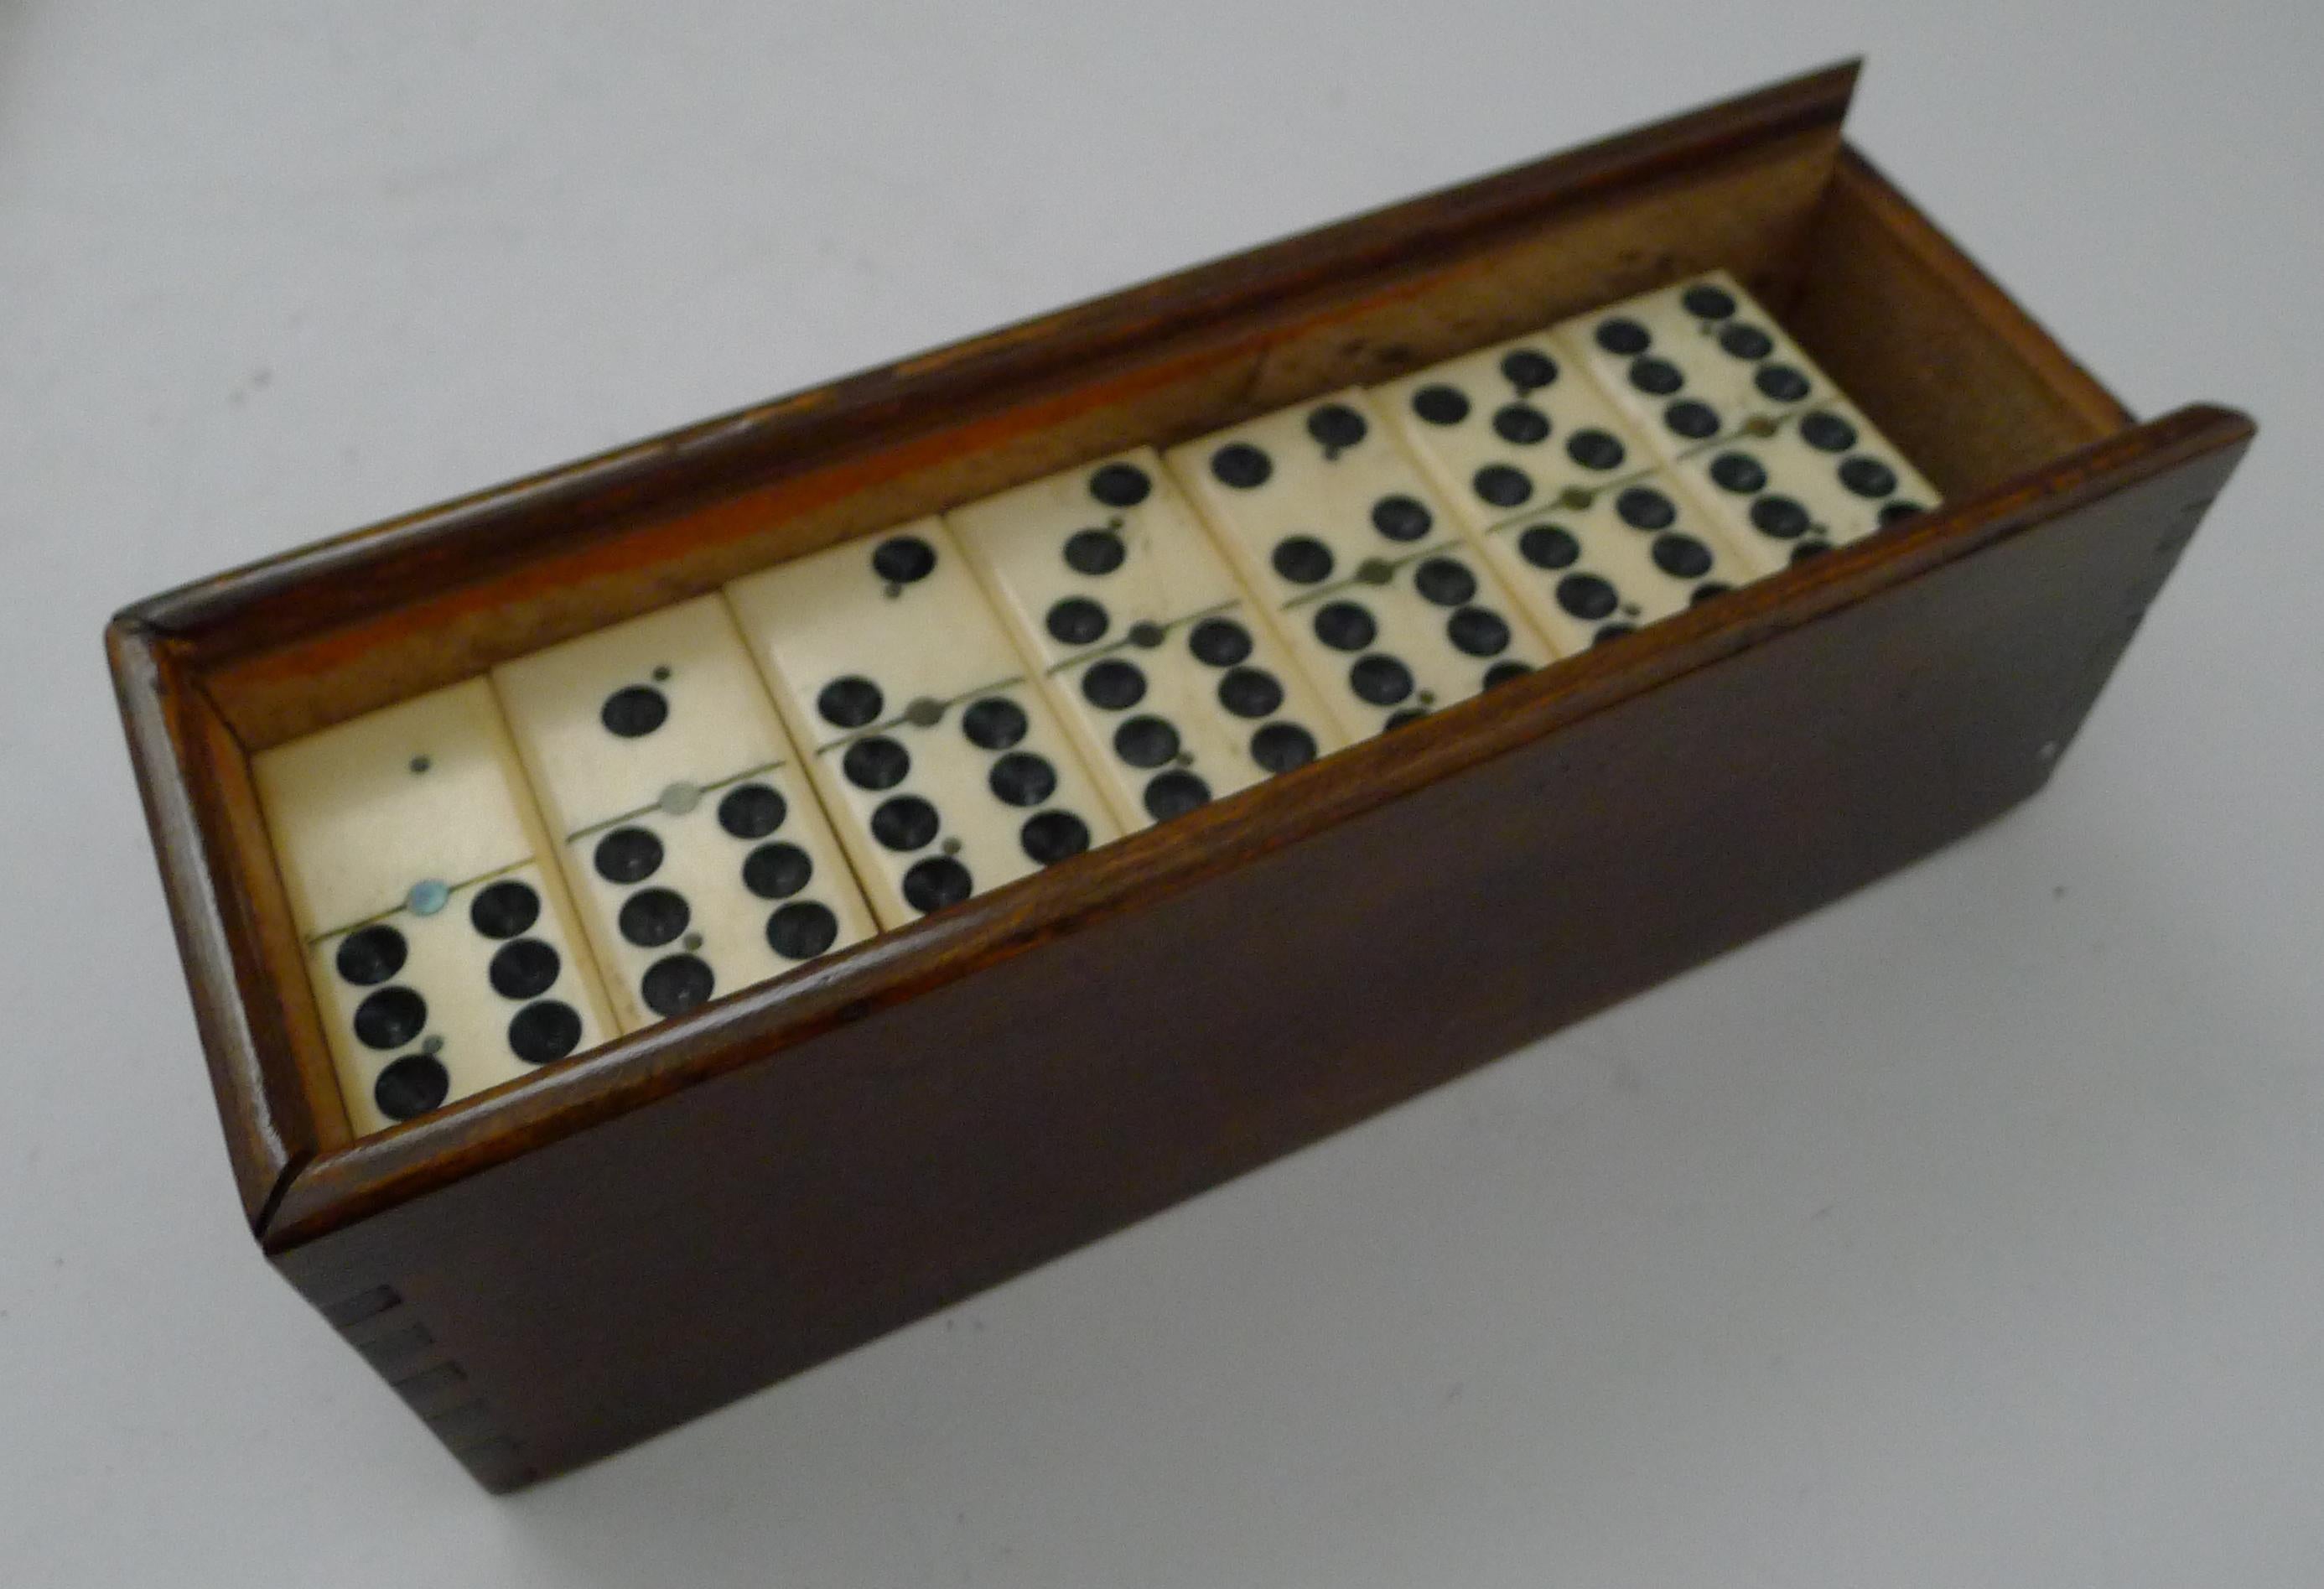 Charmant jeu de dominos de la fin de l'époque victorienne, accompagné d'une belle boîte de rangement en bois poli à couvercle coulissant.

Datant d'environ 1900, l'ensemble est meilleur que beaucoup d'autres, avec une finition de qualité, chaque